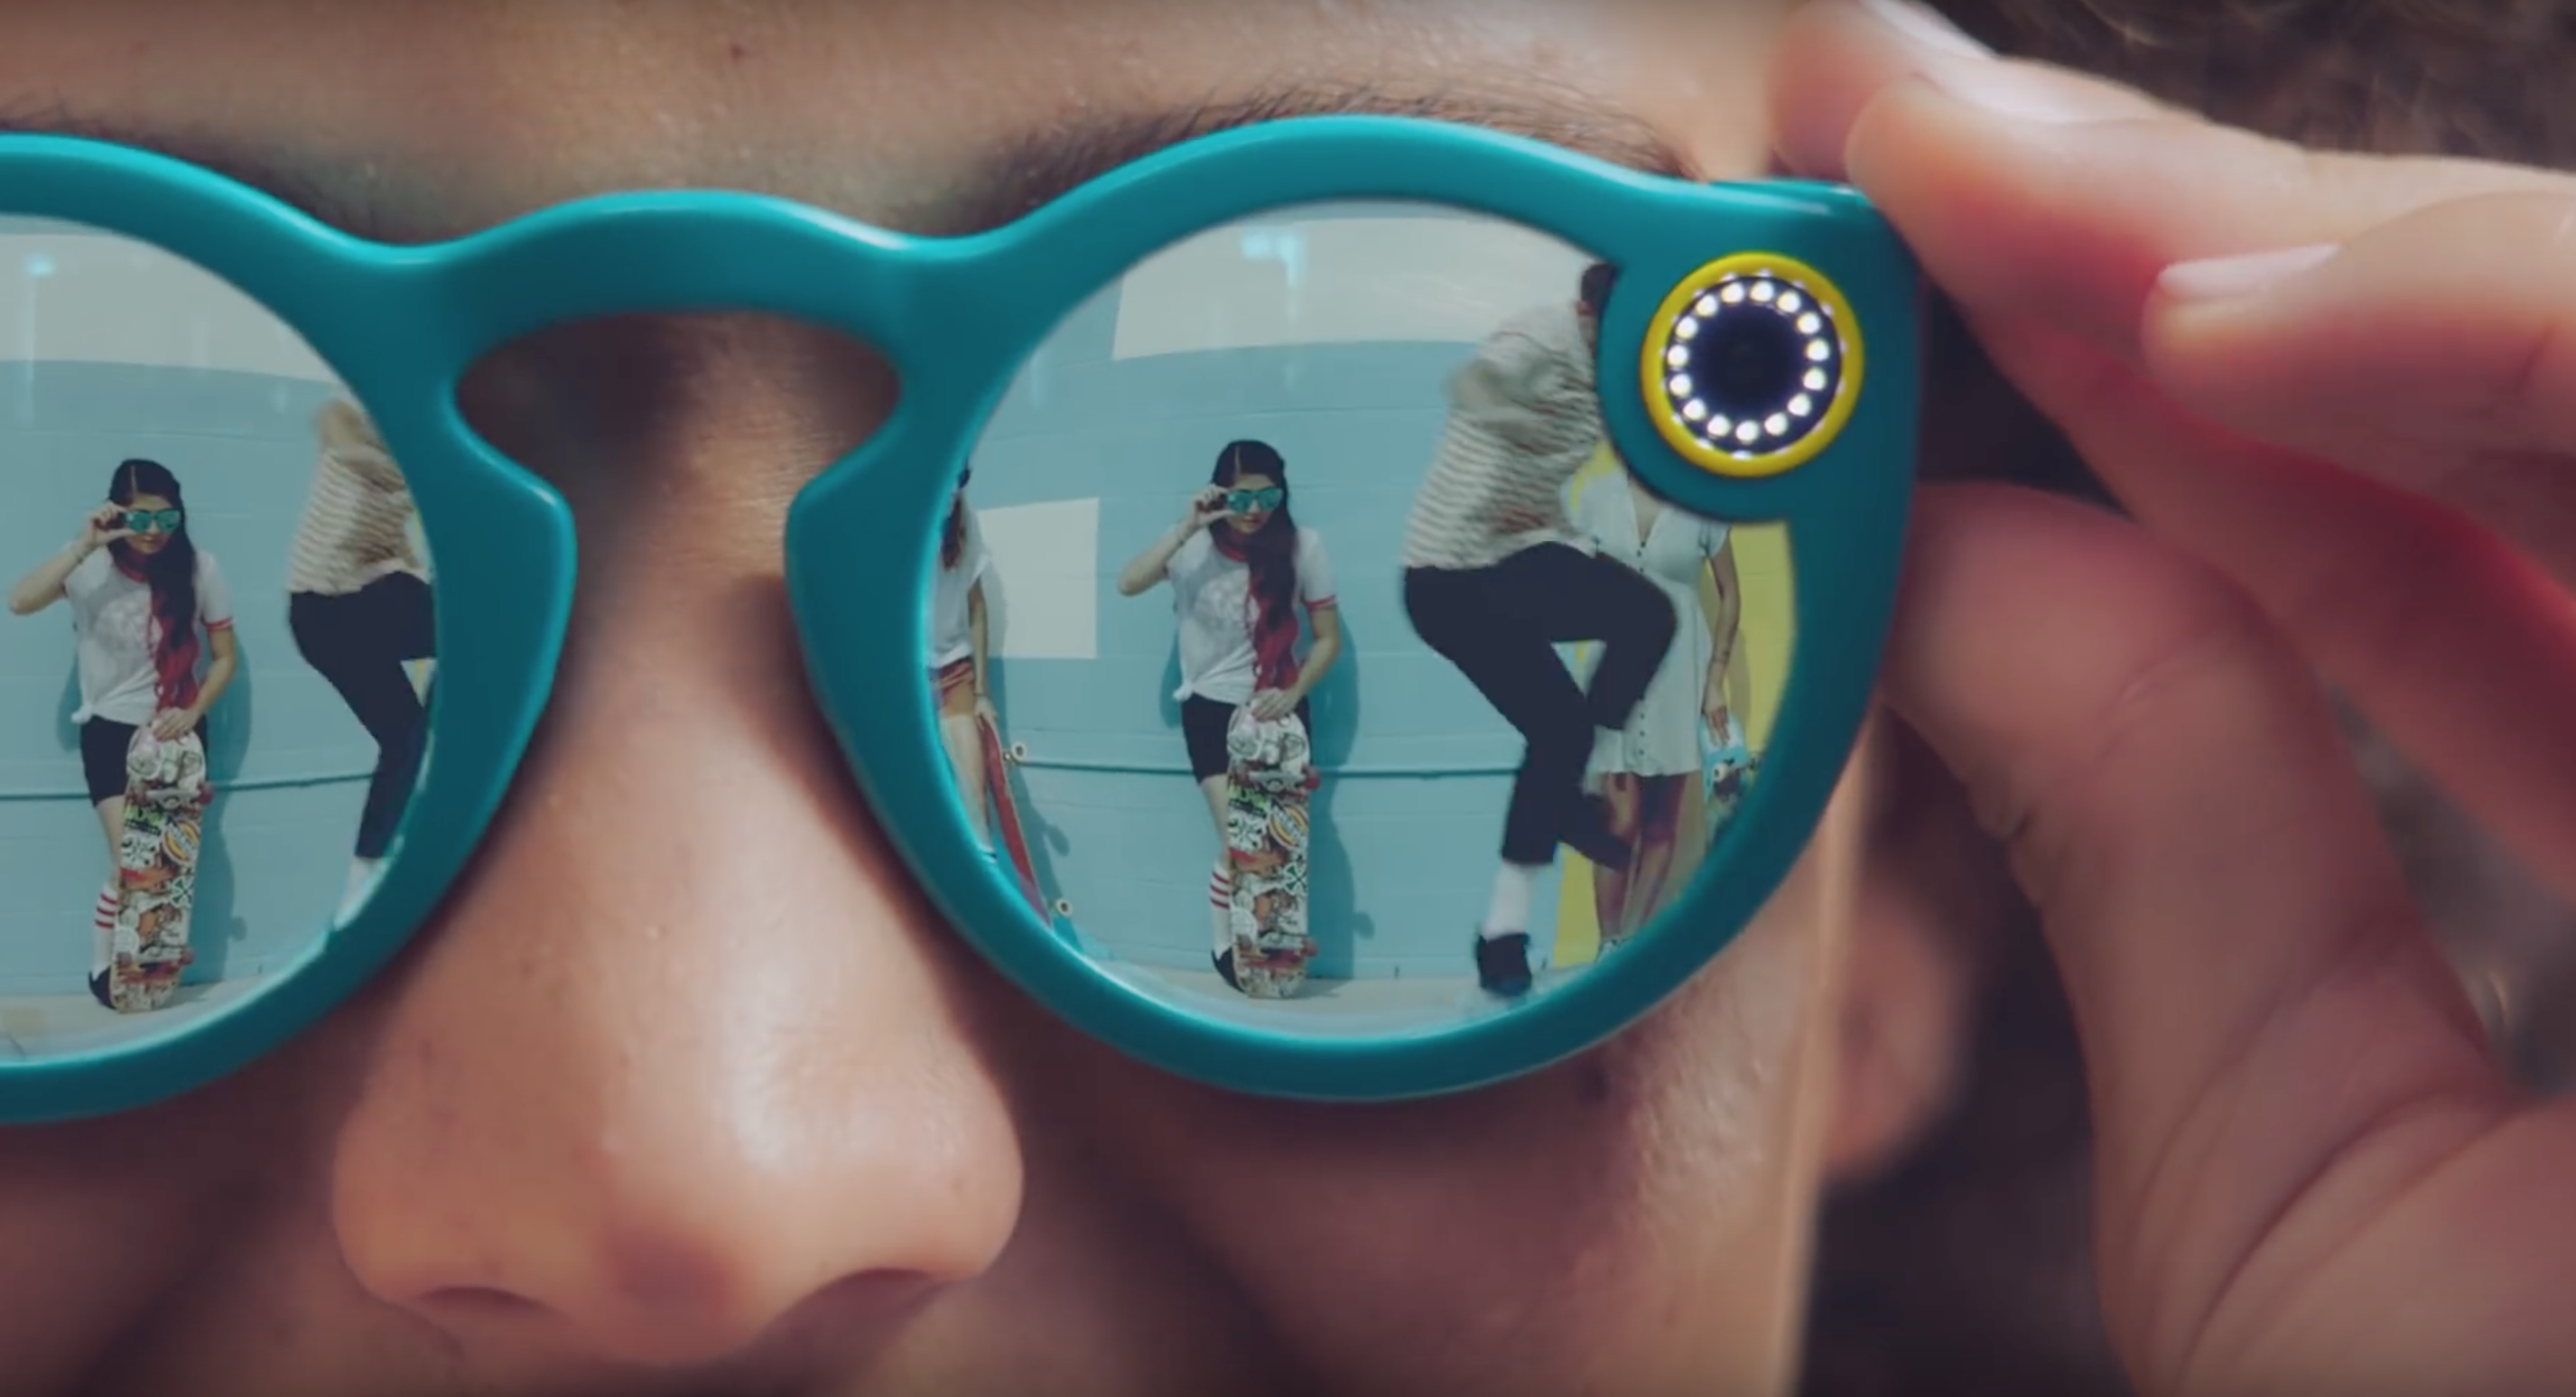 Spectacles : SnapChat va lancer ses propres lunettes connectées